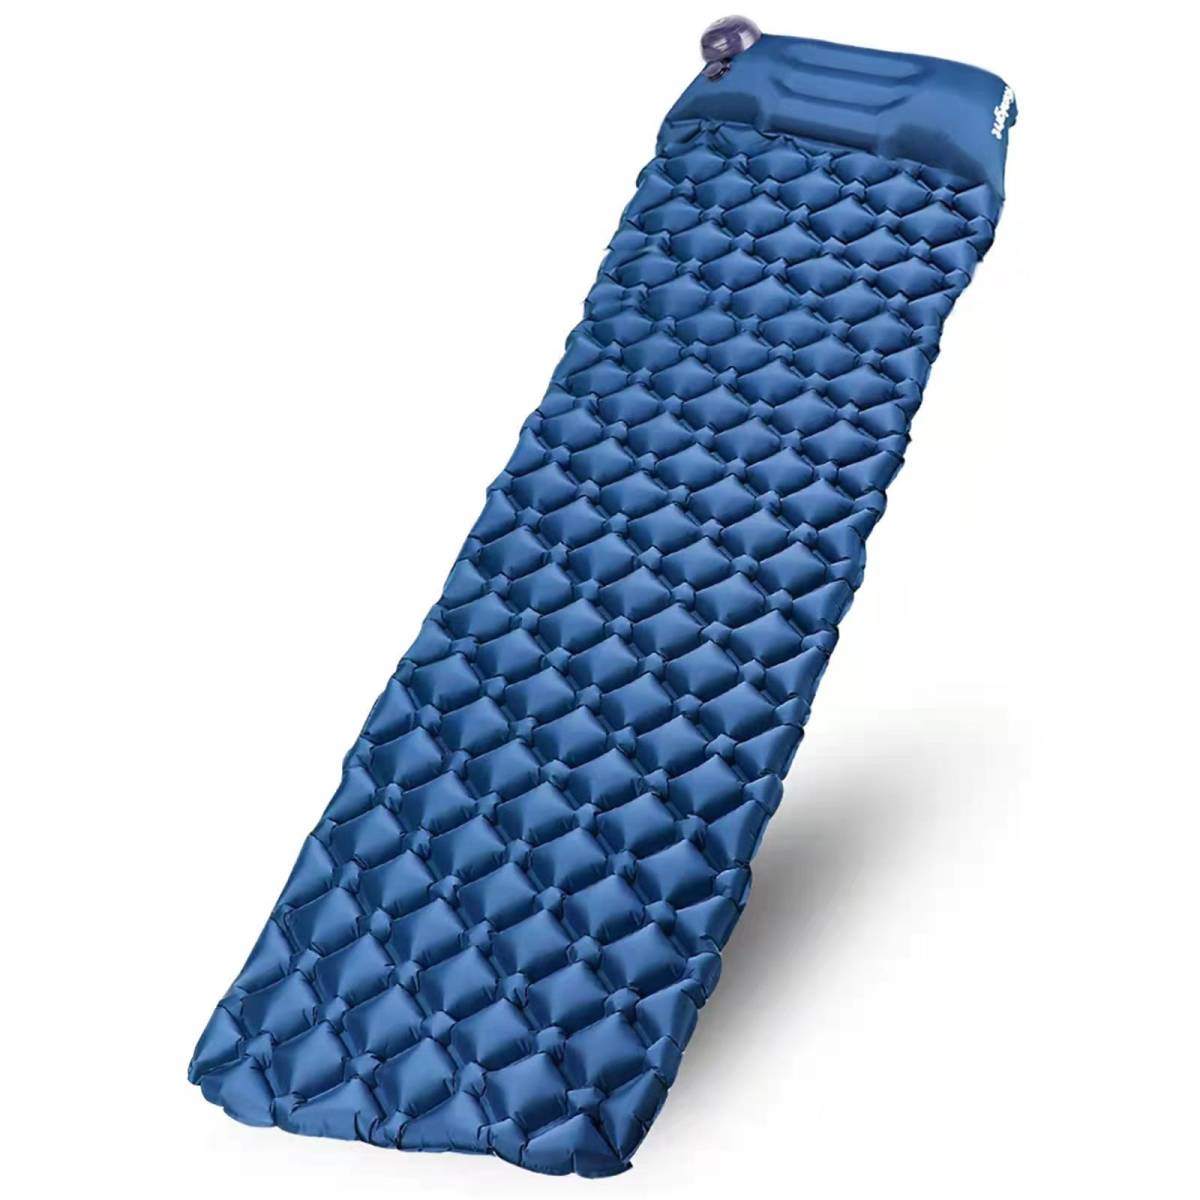 エアーマット 足踏み式 キャンプマット エアーベッド 車中泊エアーマットアウトドア コンパクト テントマット 超軽量 耐水 枕付き 連結可能の画像1